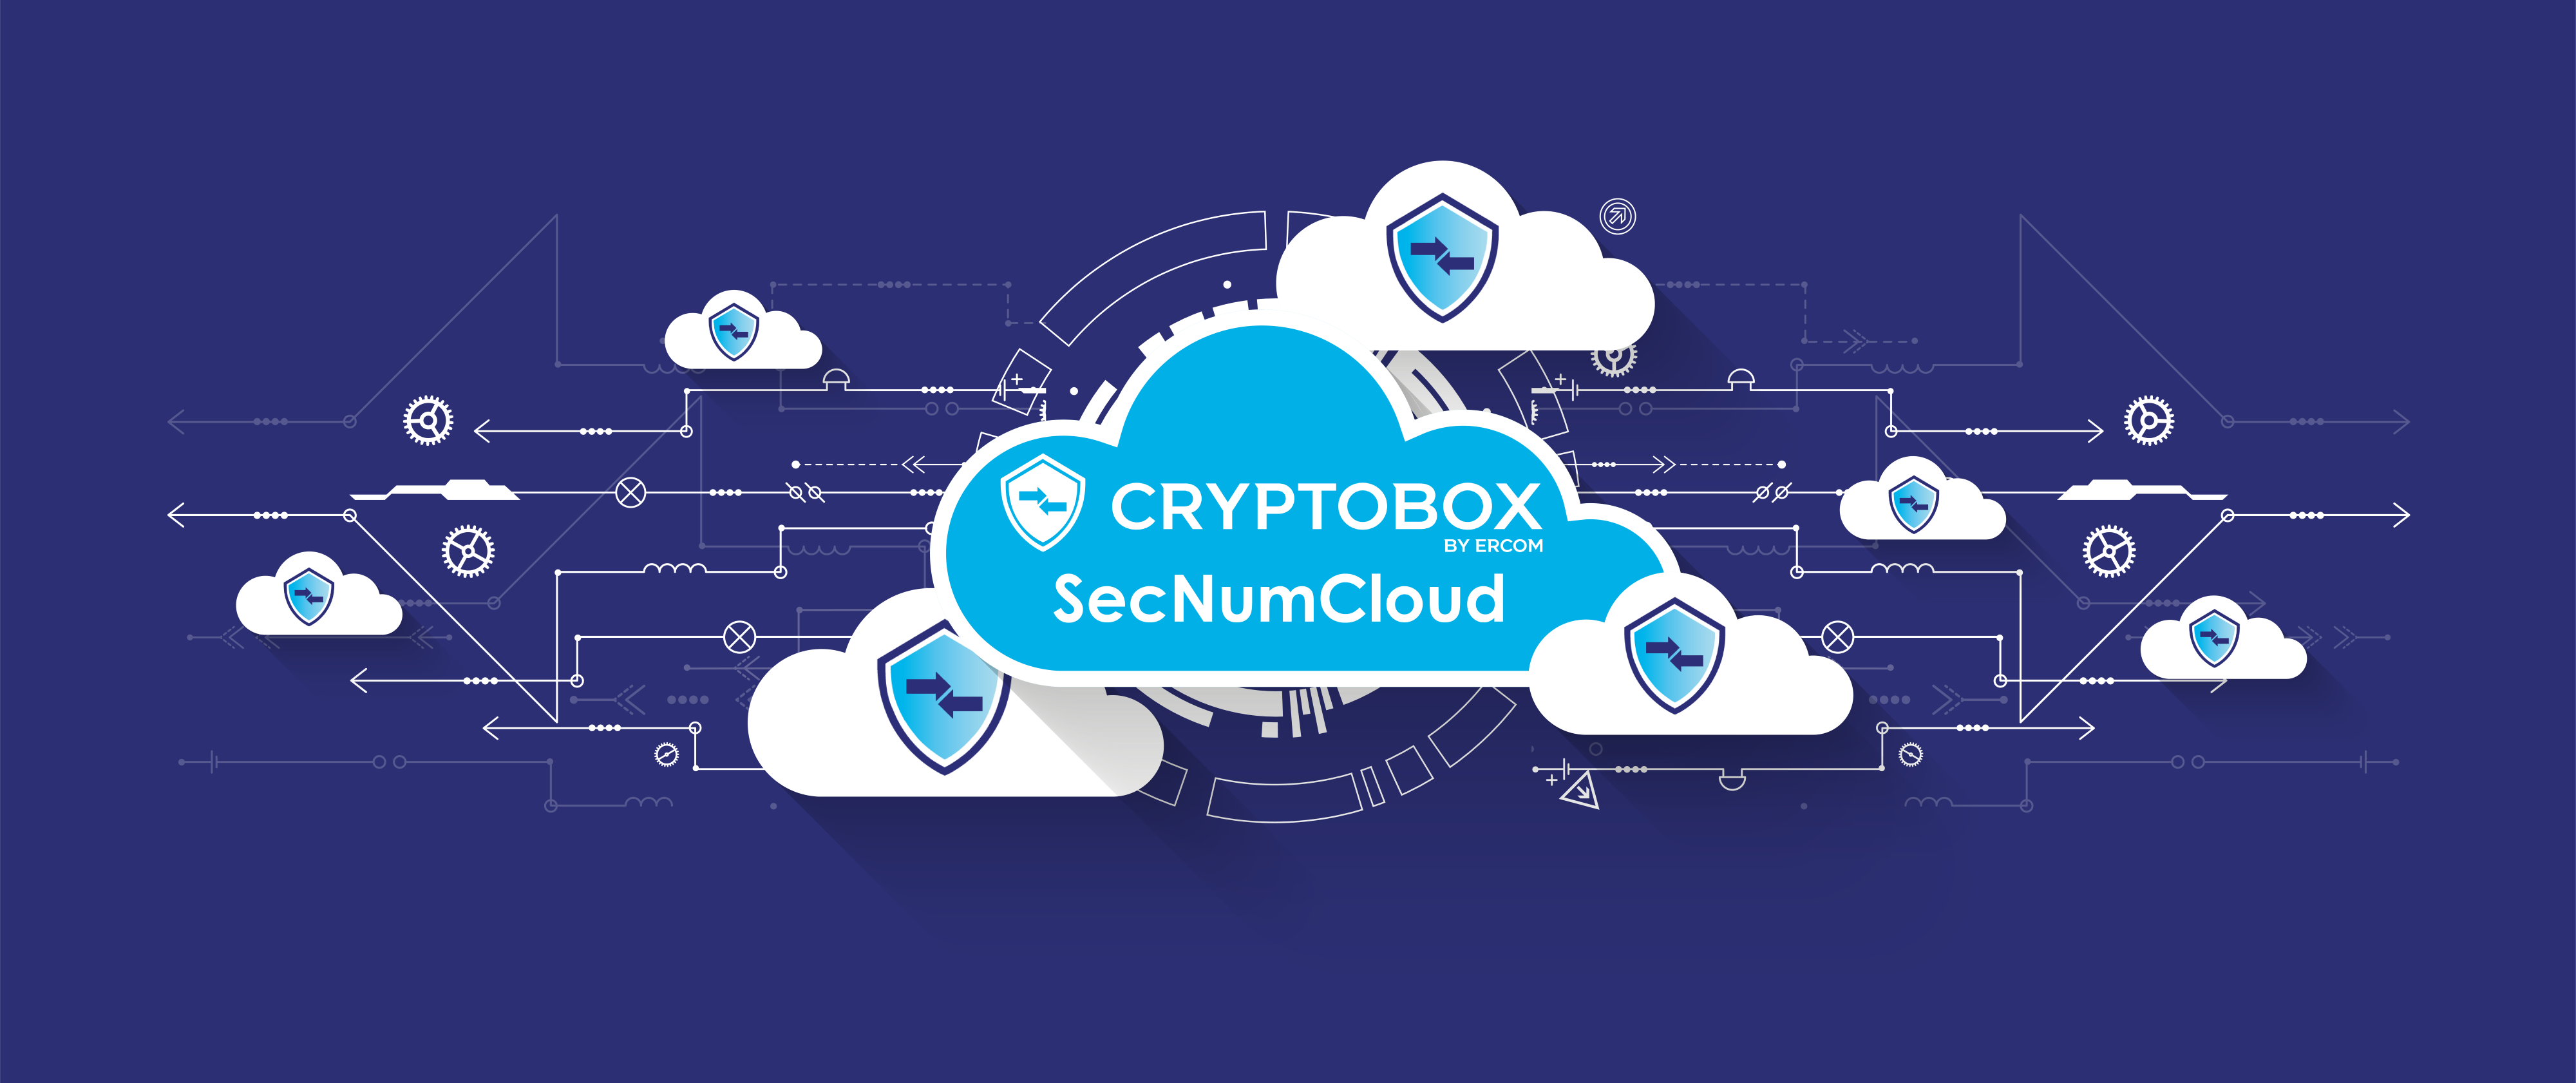 Cryptobox, la solution de partage de fichiers et de collaboration sécurisée disponible aussi en SecNumCloud